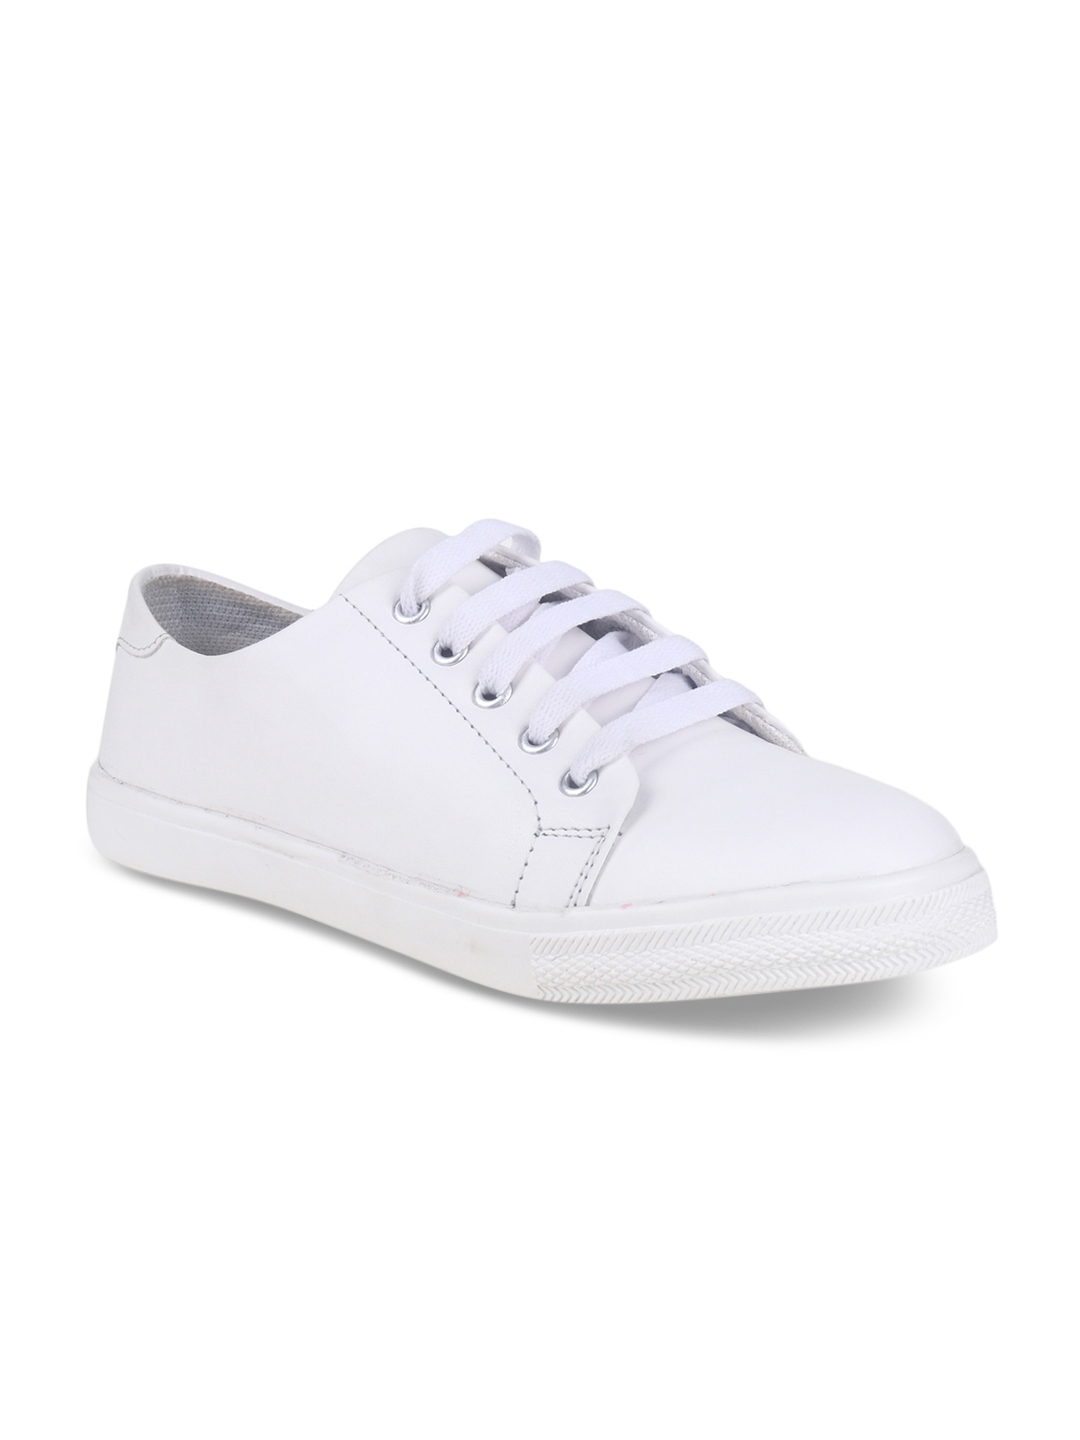 Buy Shoetopia Women White Sneakers - Casual Shoes for Women 5911606 ...